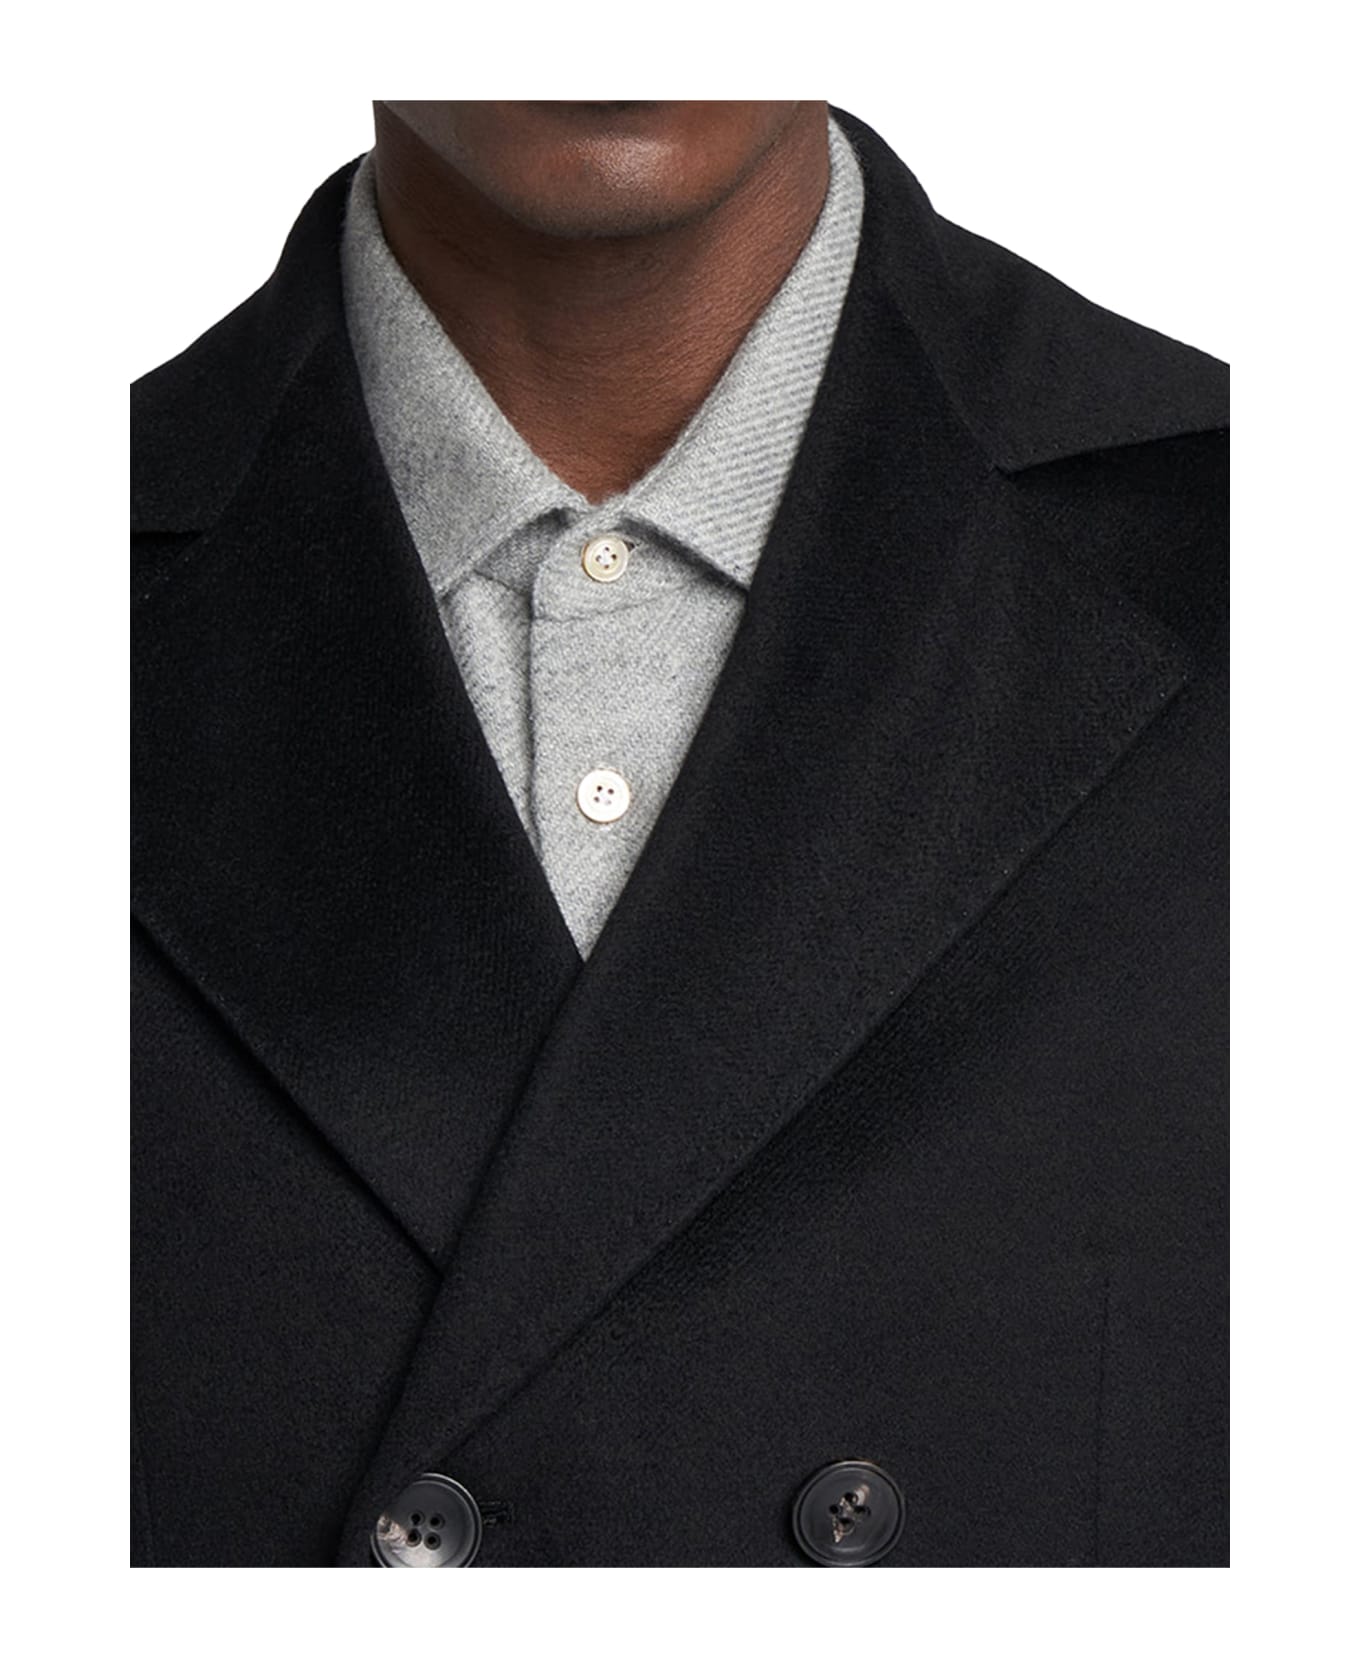 Kiton Outdoor Jacket Cashmere - BLACK レインコート